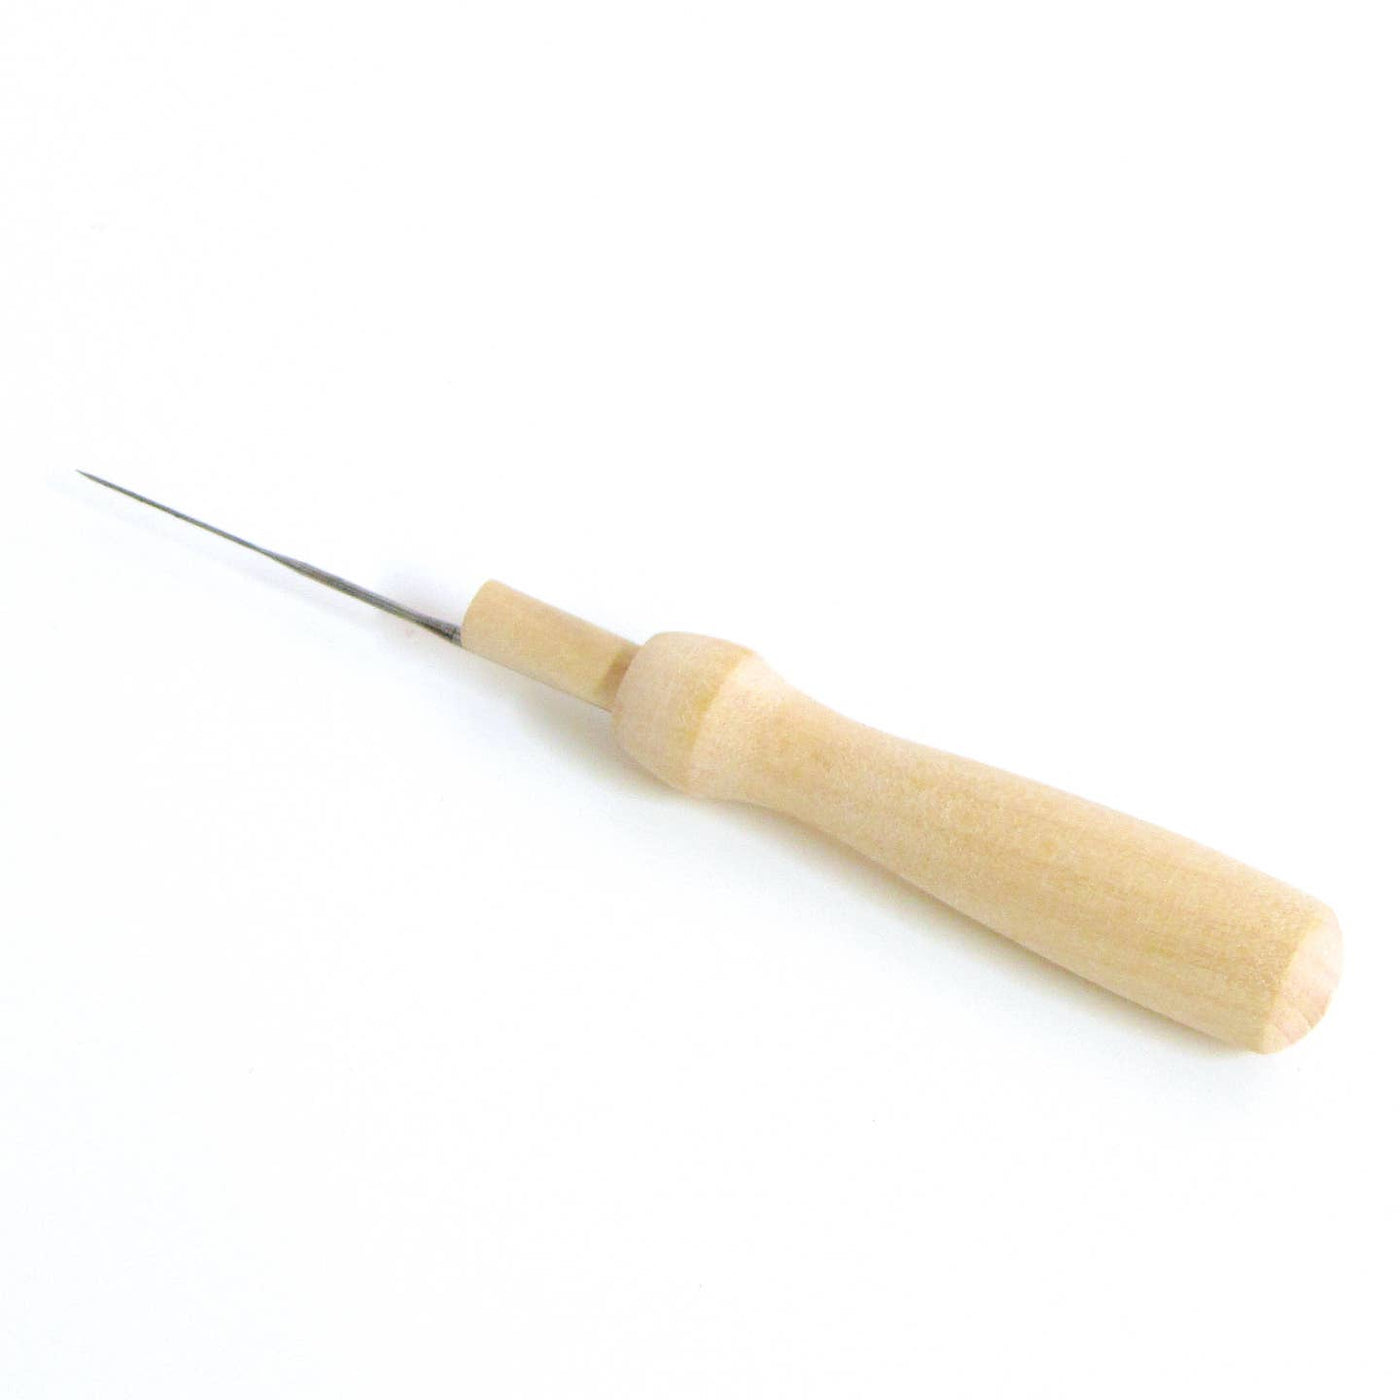 Hawthorn Handmade Wooden Felting Needle Holder (With One Needle)